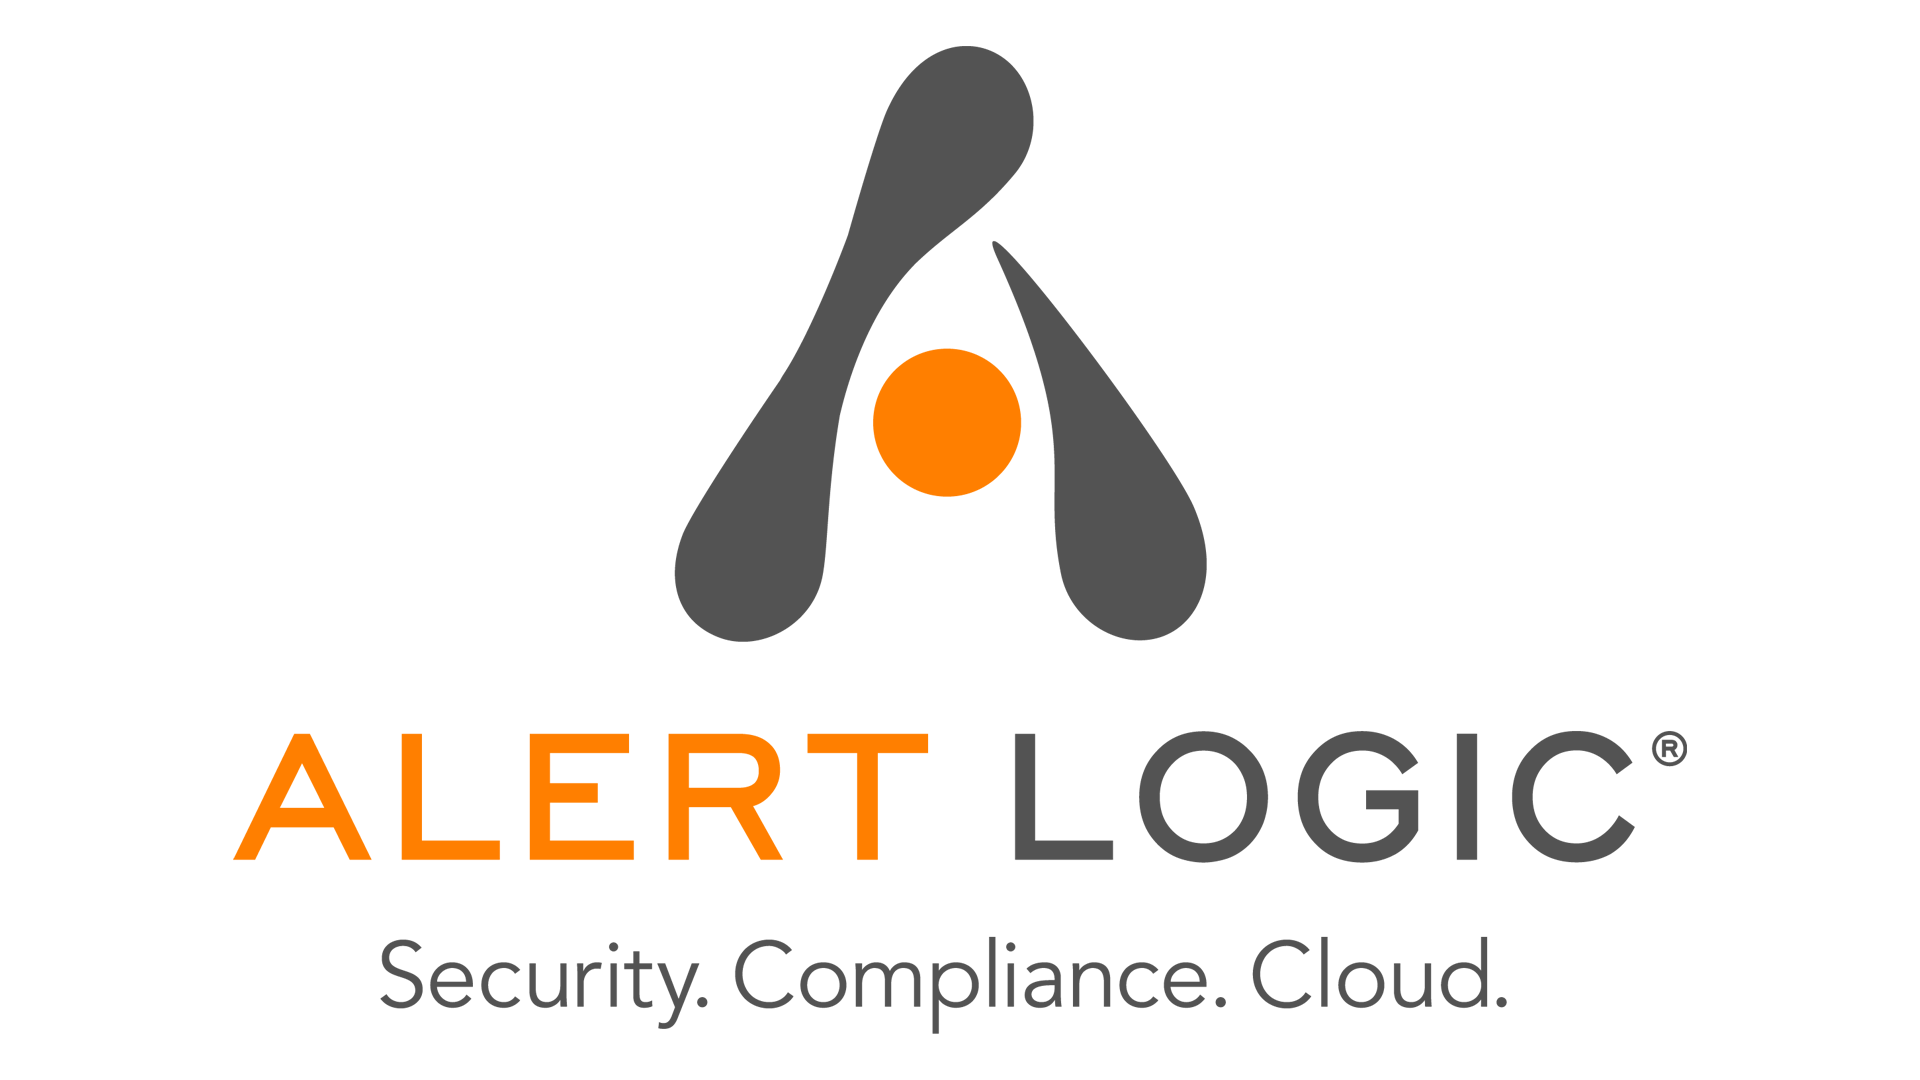 Google Alerts Logo - Alert logic Logo, Alert logic Symbol, Meaning, History and Evolution